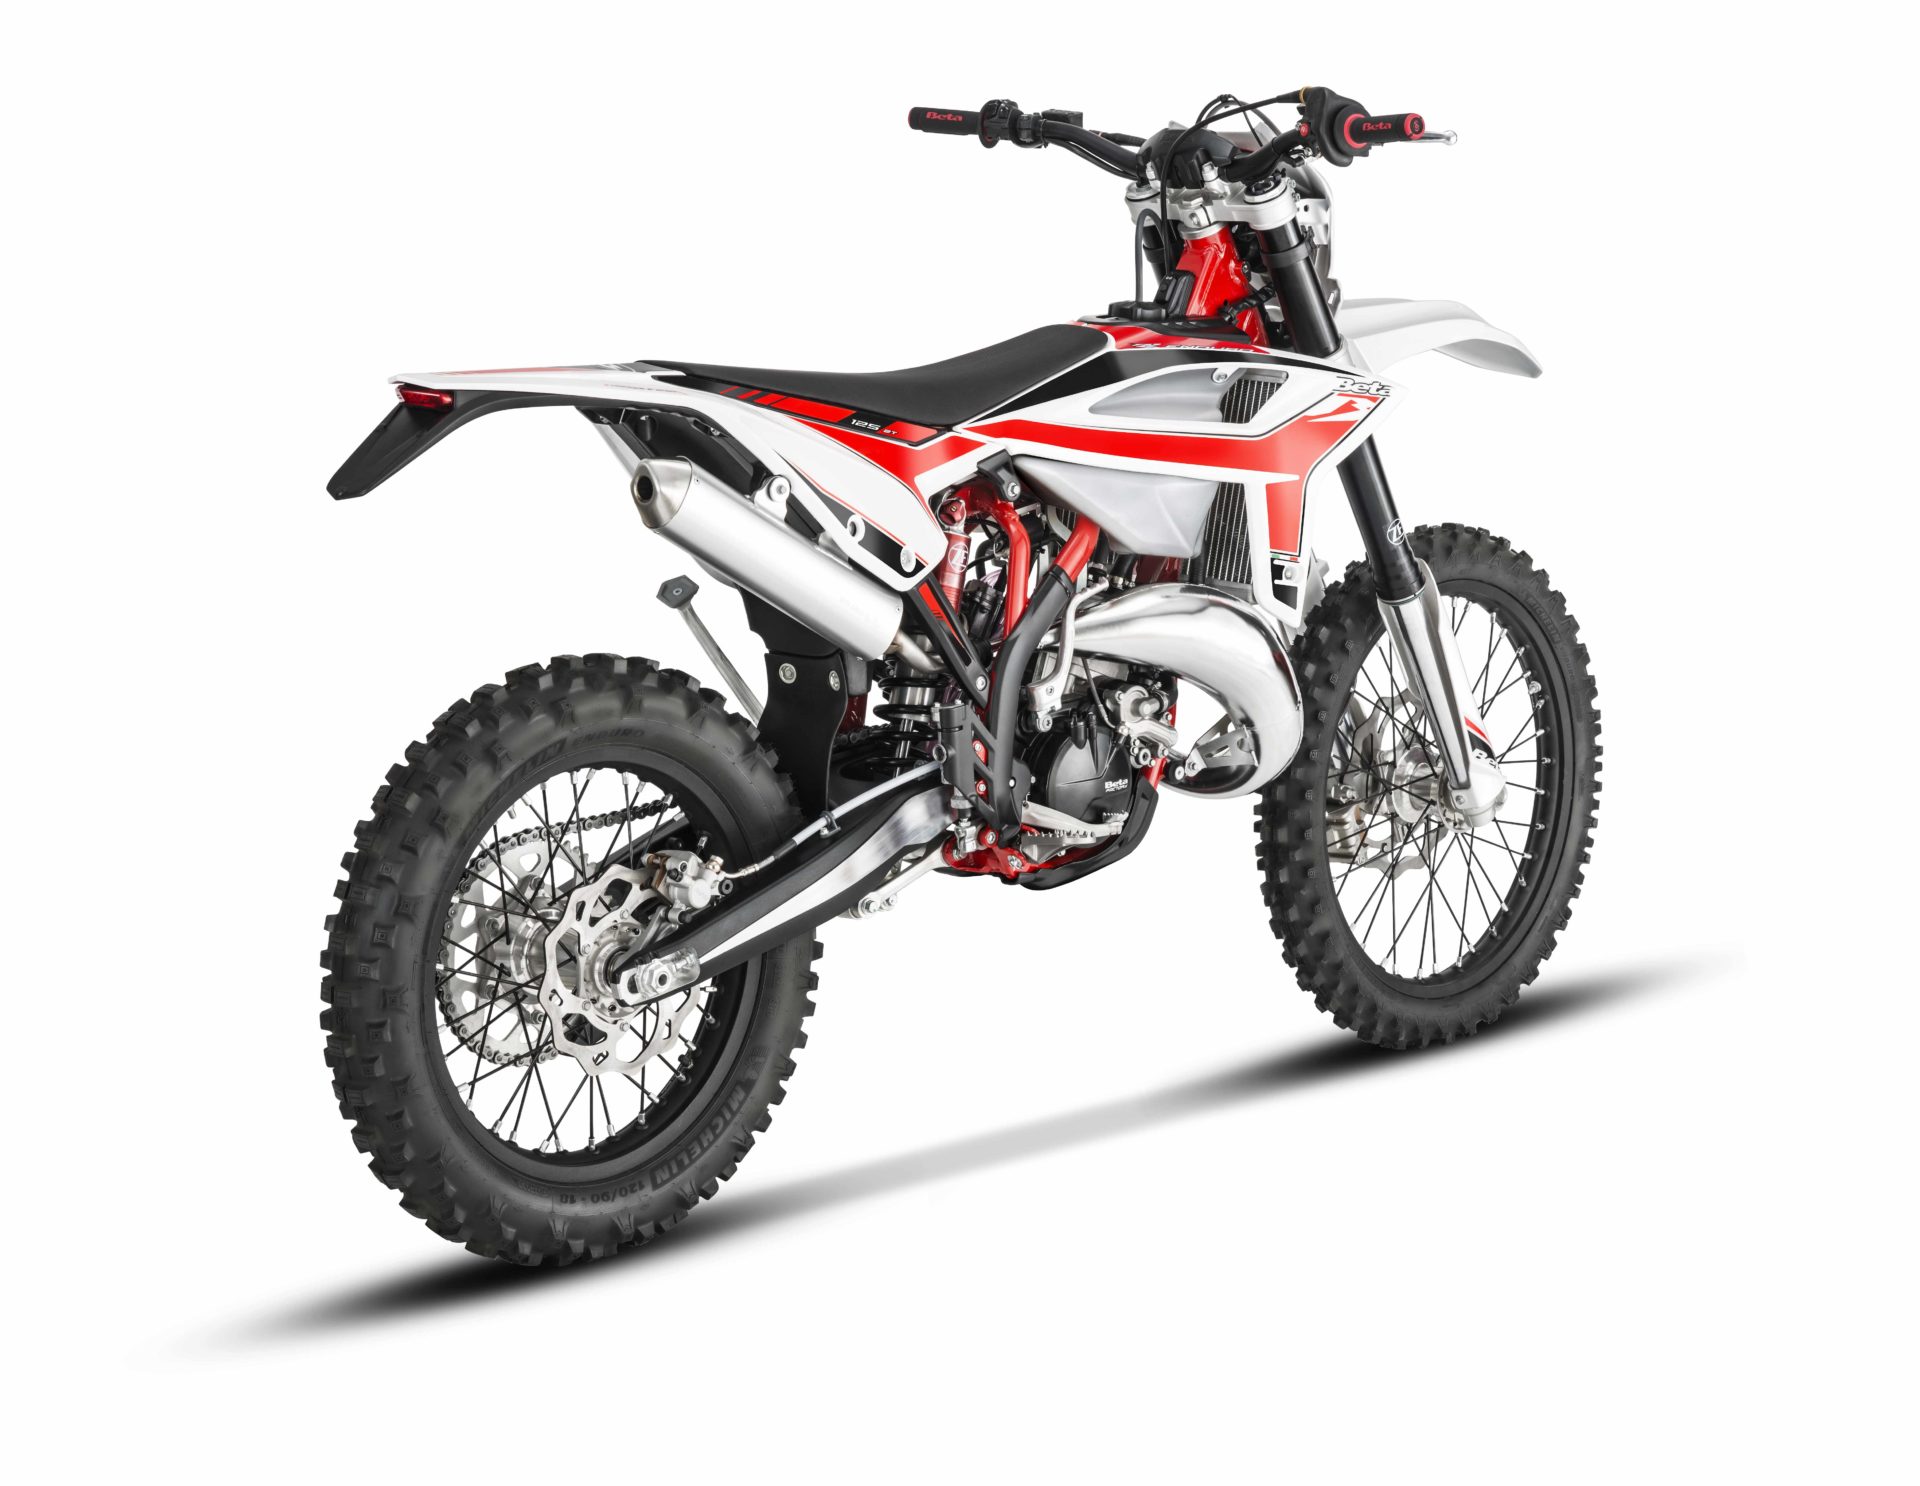 Caballete Motocross Pro Beta Alp 125/ 200/ 350, RR 125/ 250/ 300